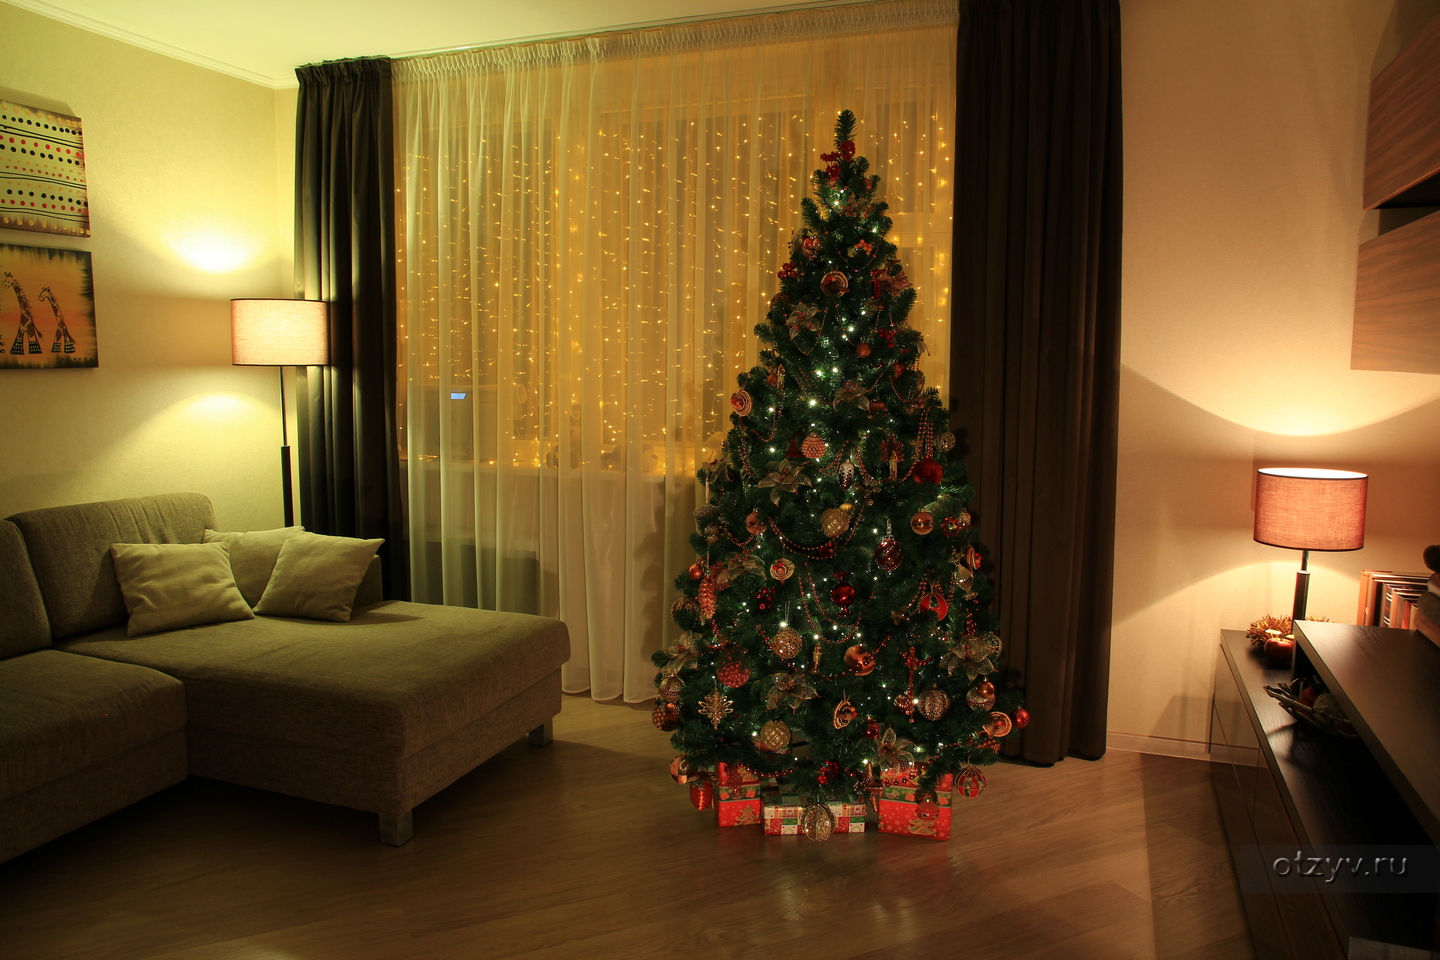 Елку в квартире 1. Комната с елкой. Новогодняя елка в квартире. Красивая елка. Новогодний интерьер в квартире.